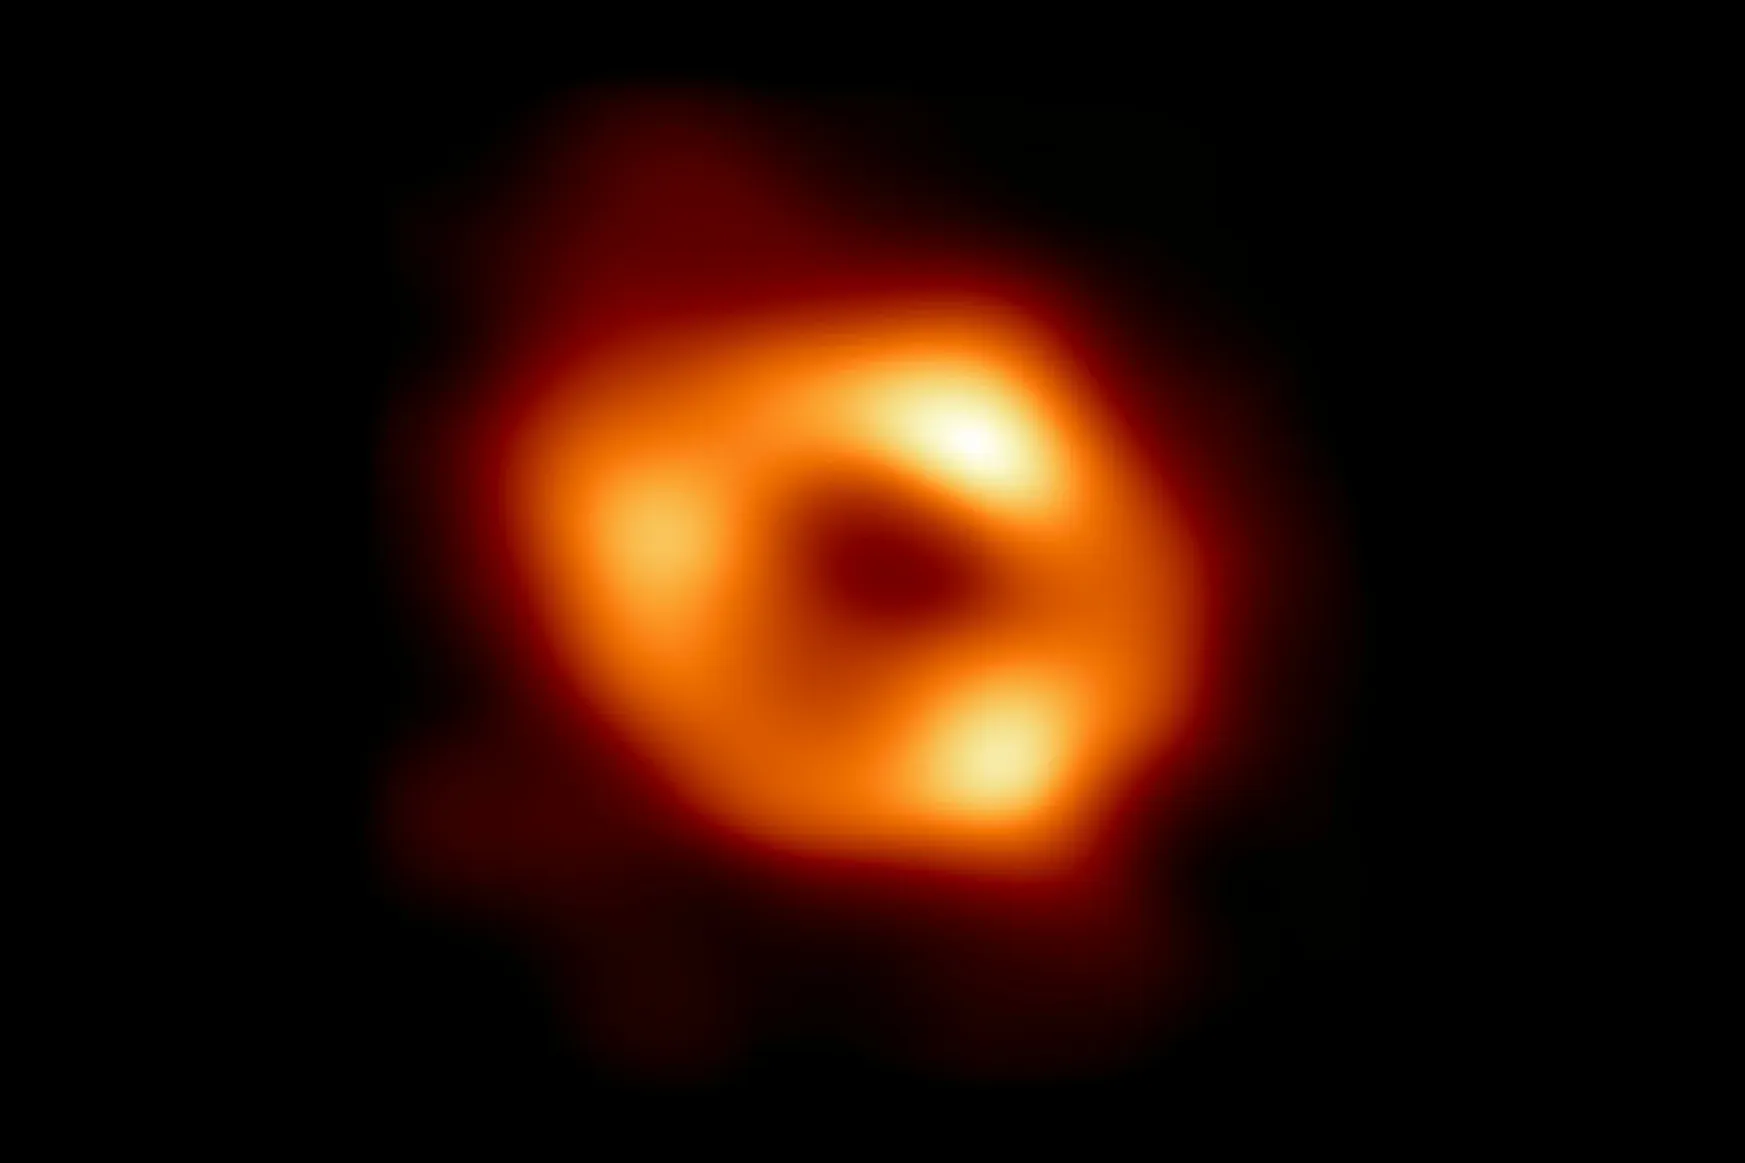 Kép készült a galaxisunk fekete lyukáról